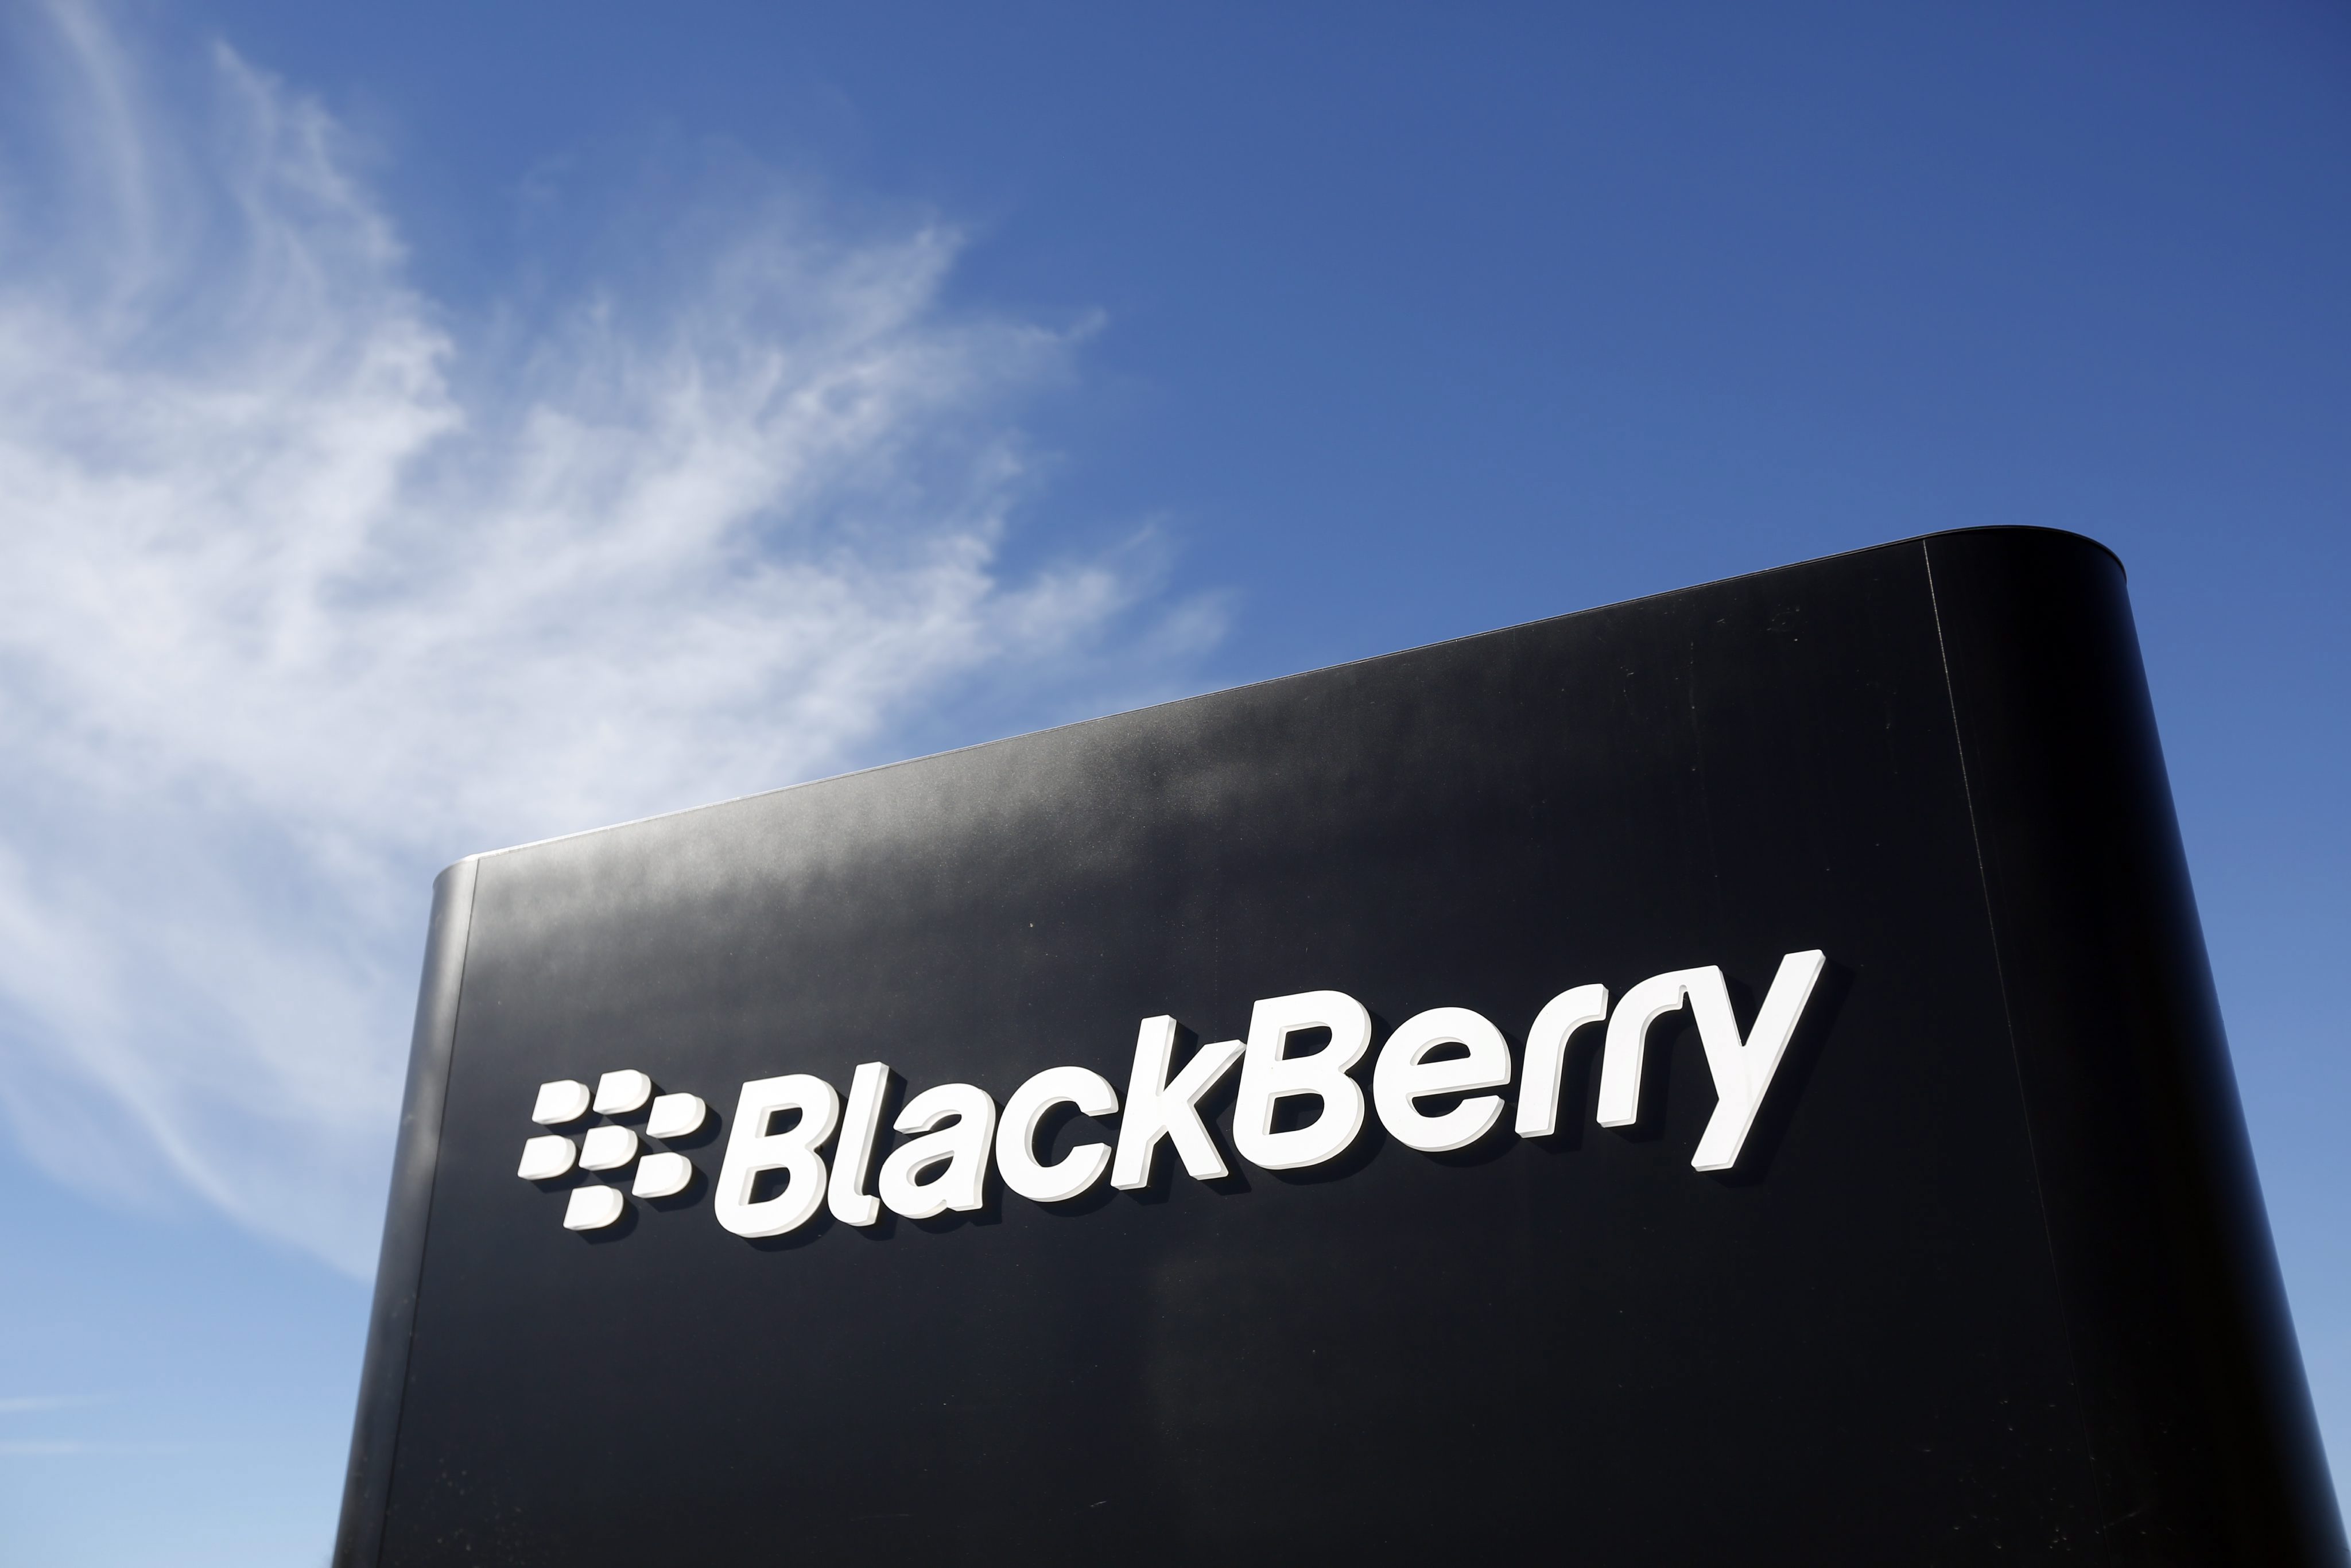 Съветват бизнеса да се откаже от BlackBerry